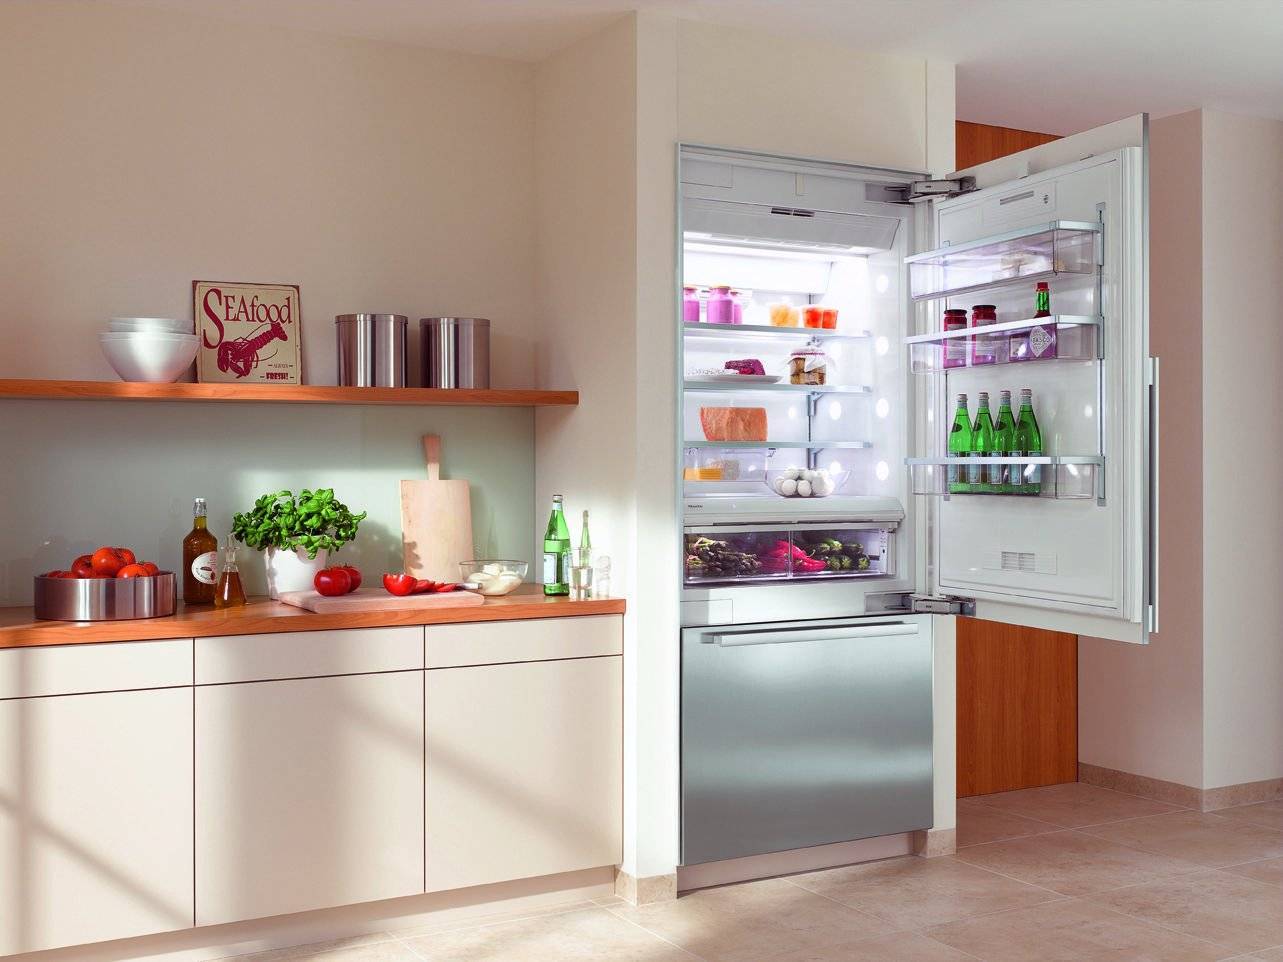 Правильный выбор встраиваемого холодильника – гарантия отсутствия проблем